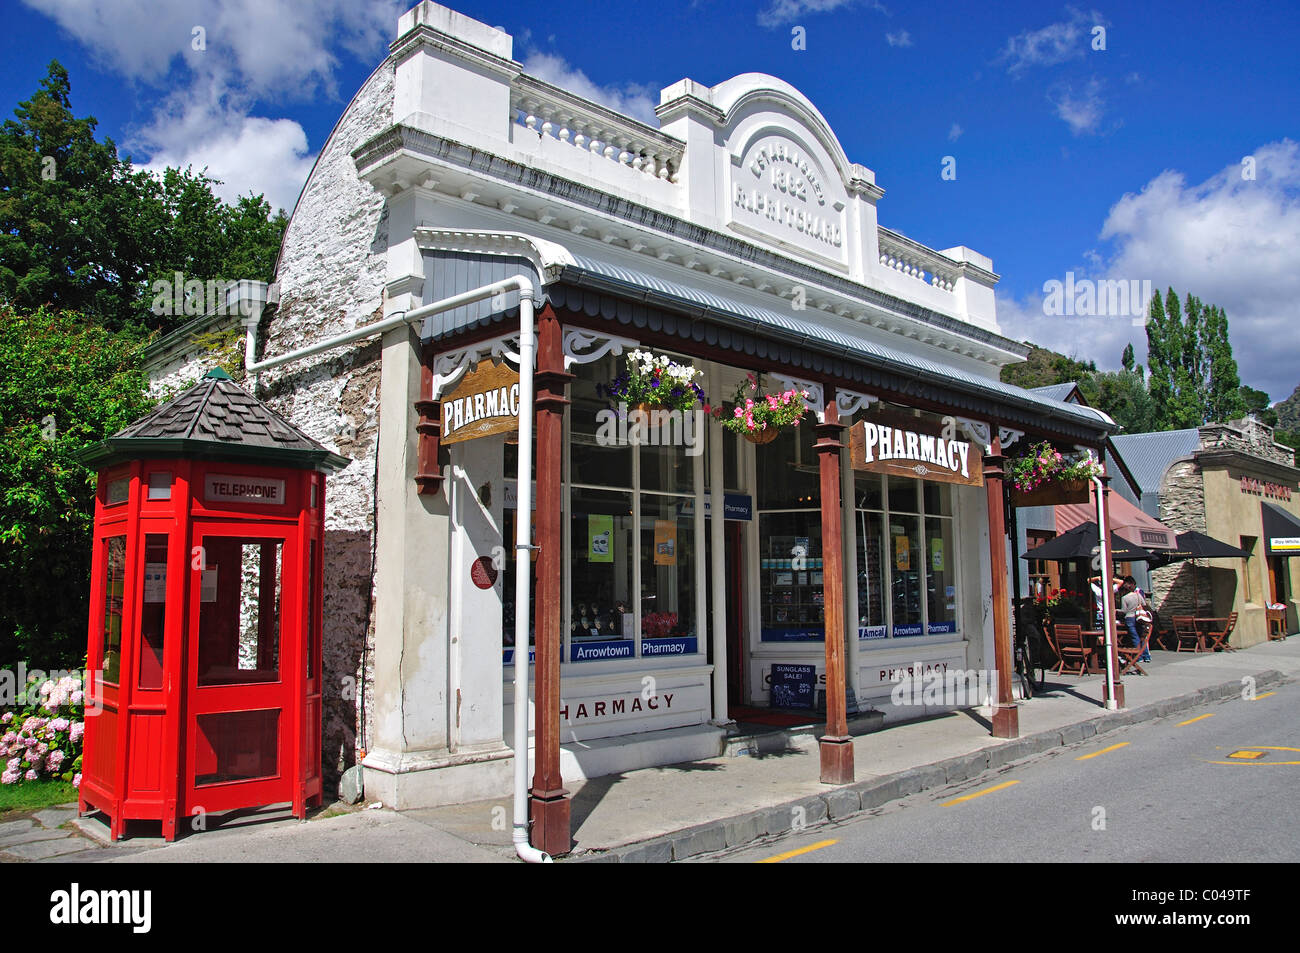 Arrowtown Pharmacy, Buckingham Street, Arrowtown, Otago Region, South Island, New Zealand Stock Photo